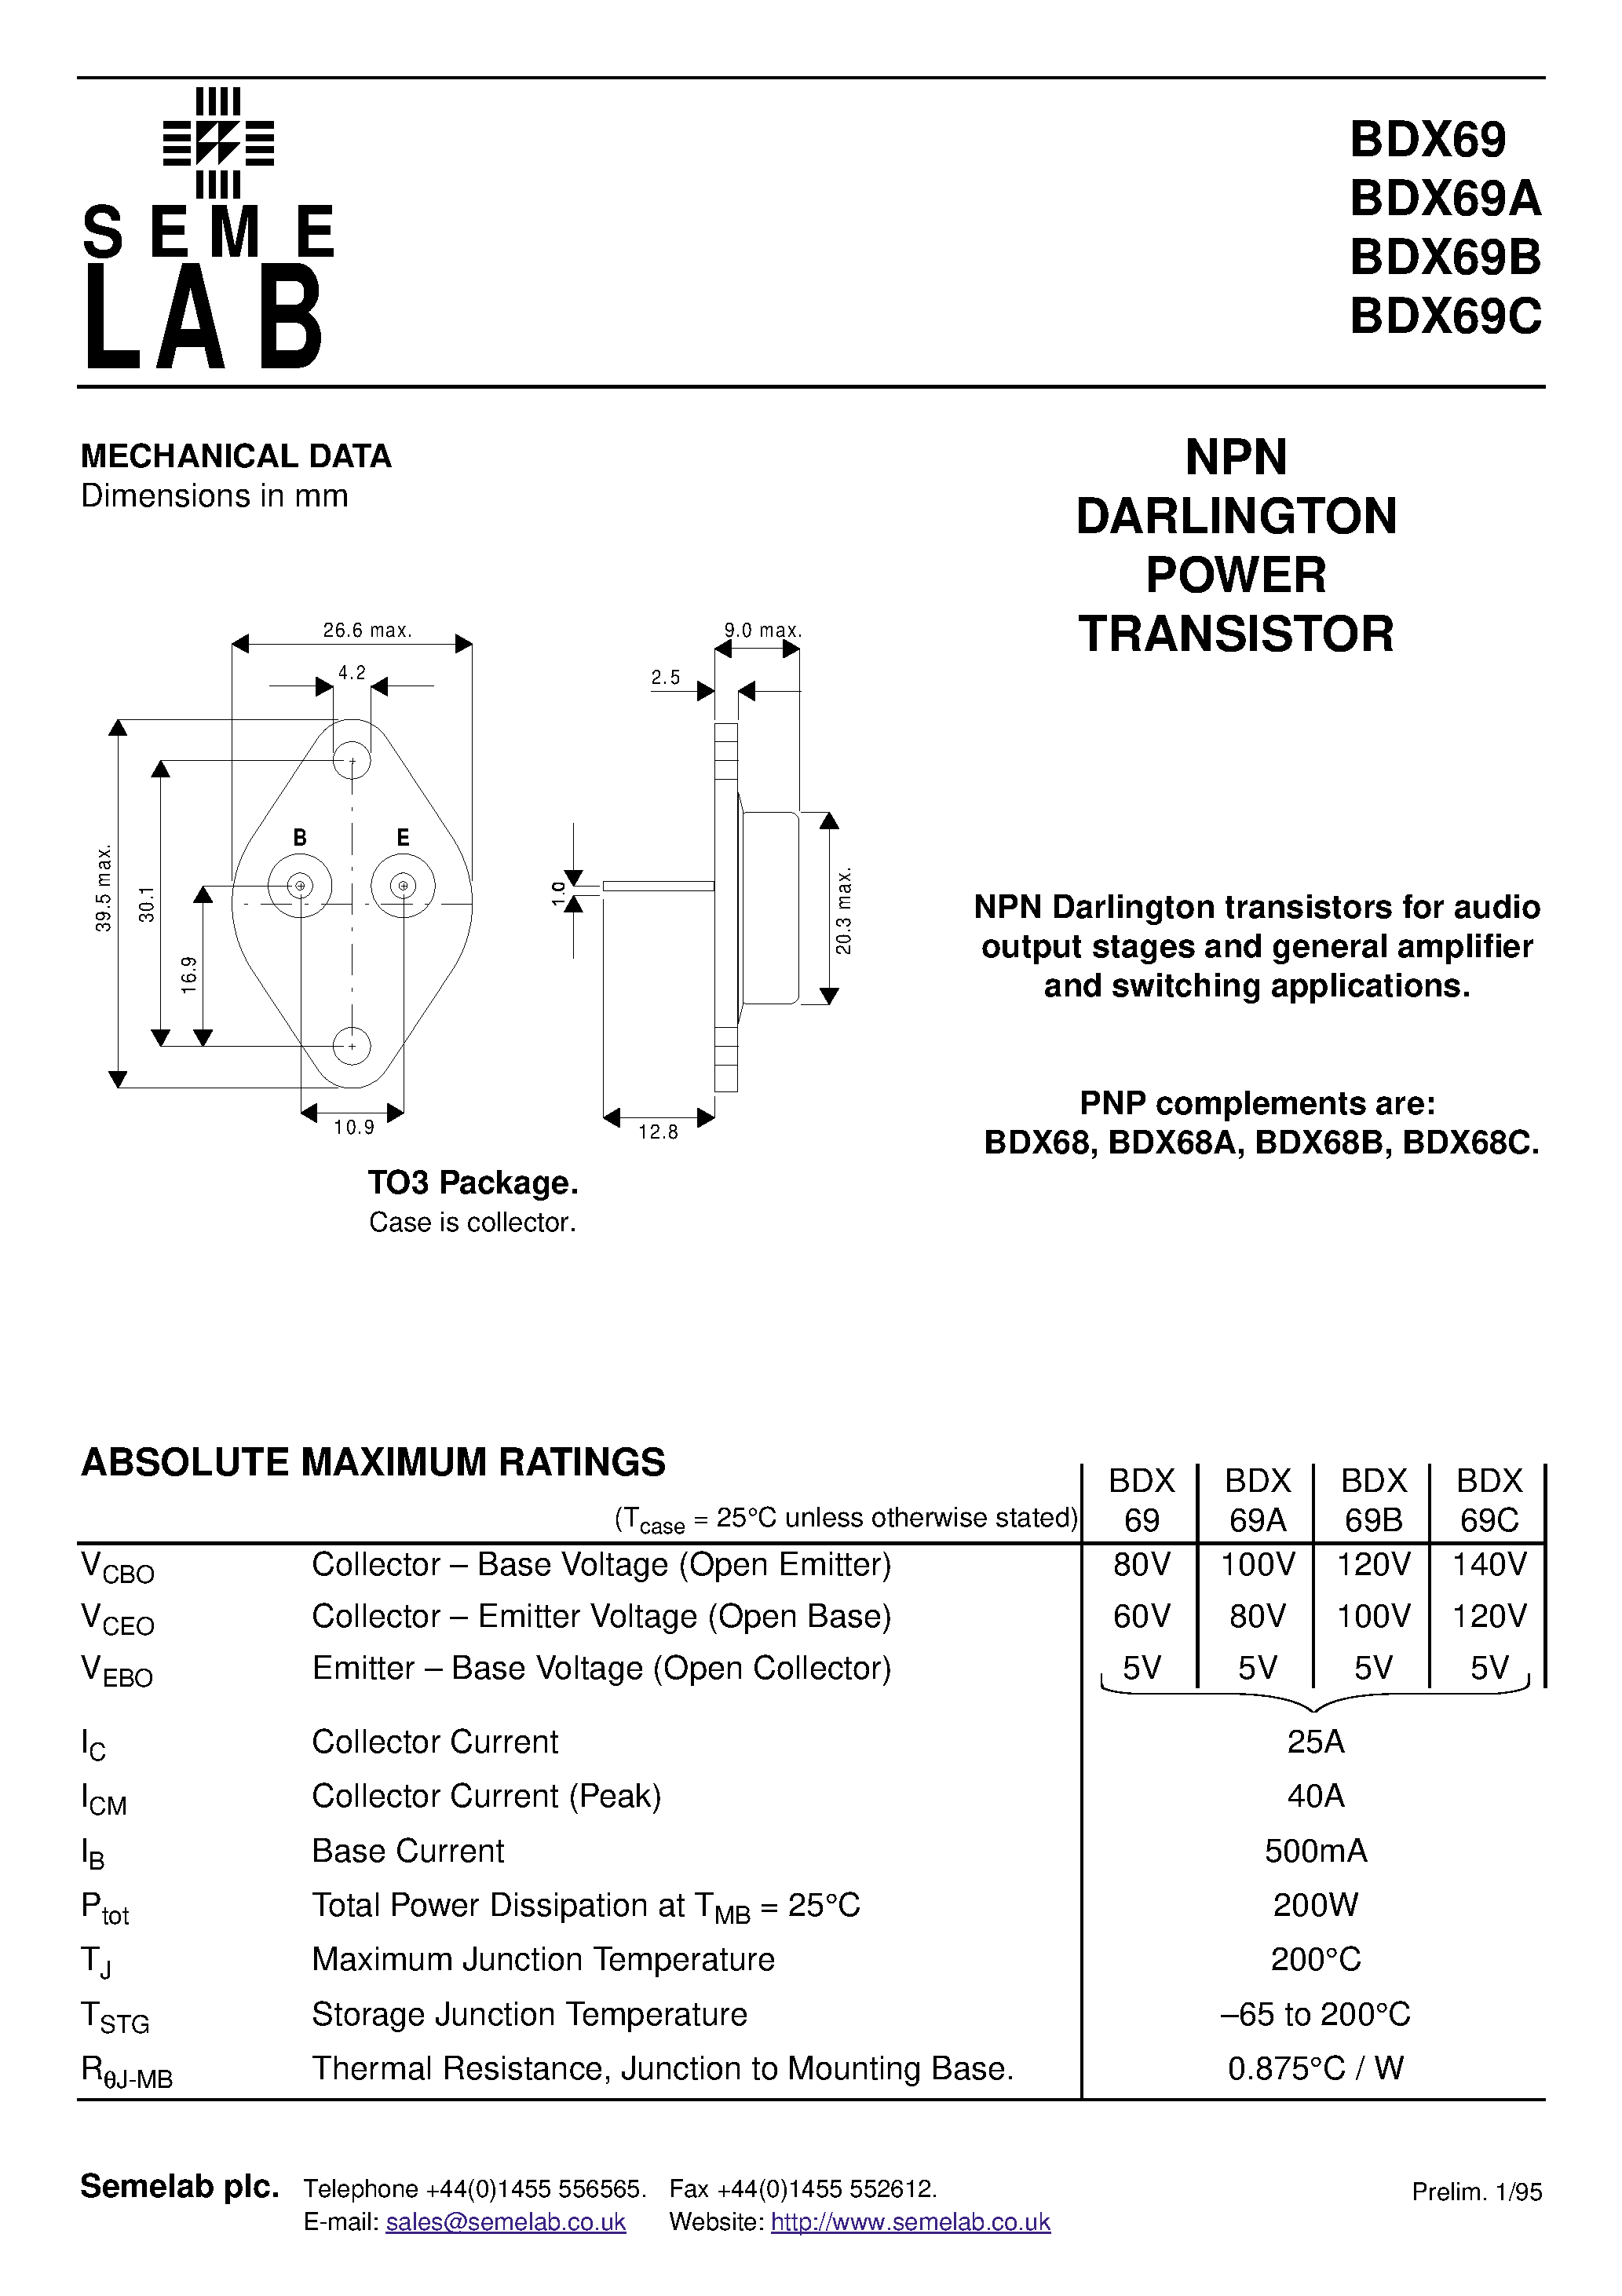 Даташит BDX69C - NPN DARLINGTON POWER TRANSISTOR страница 1